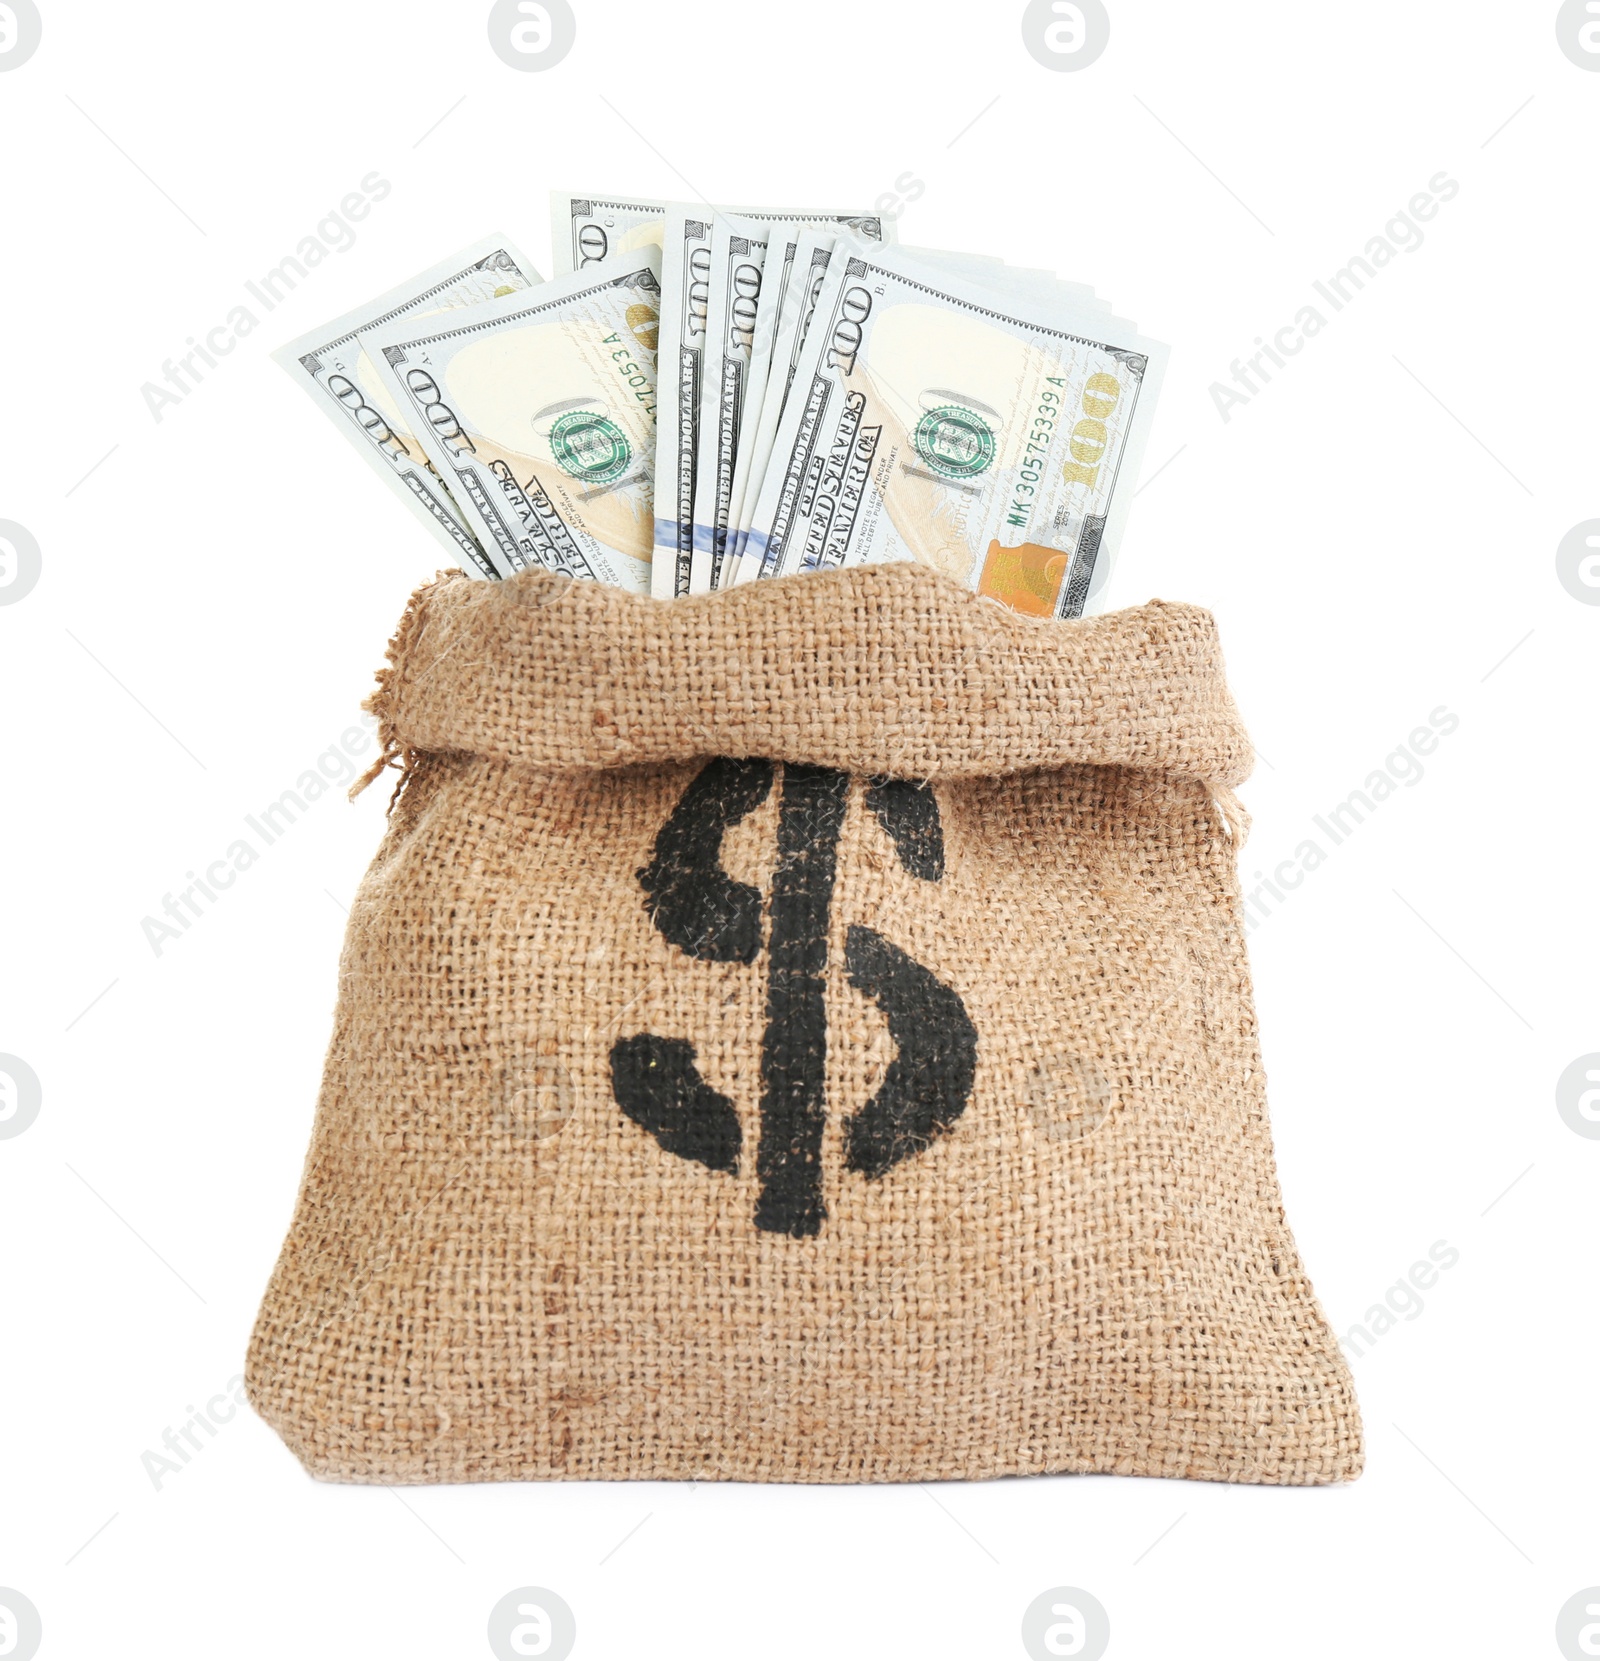 Photo of Sack full of money isolated on white